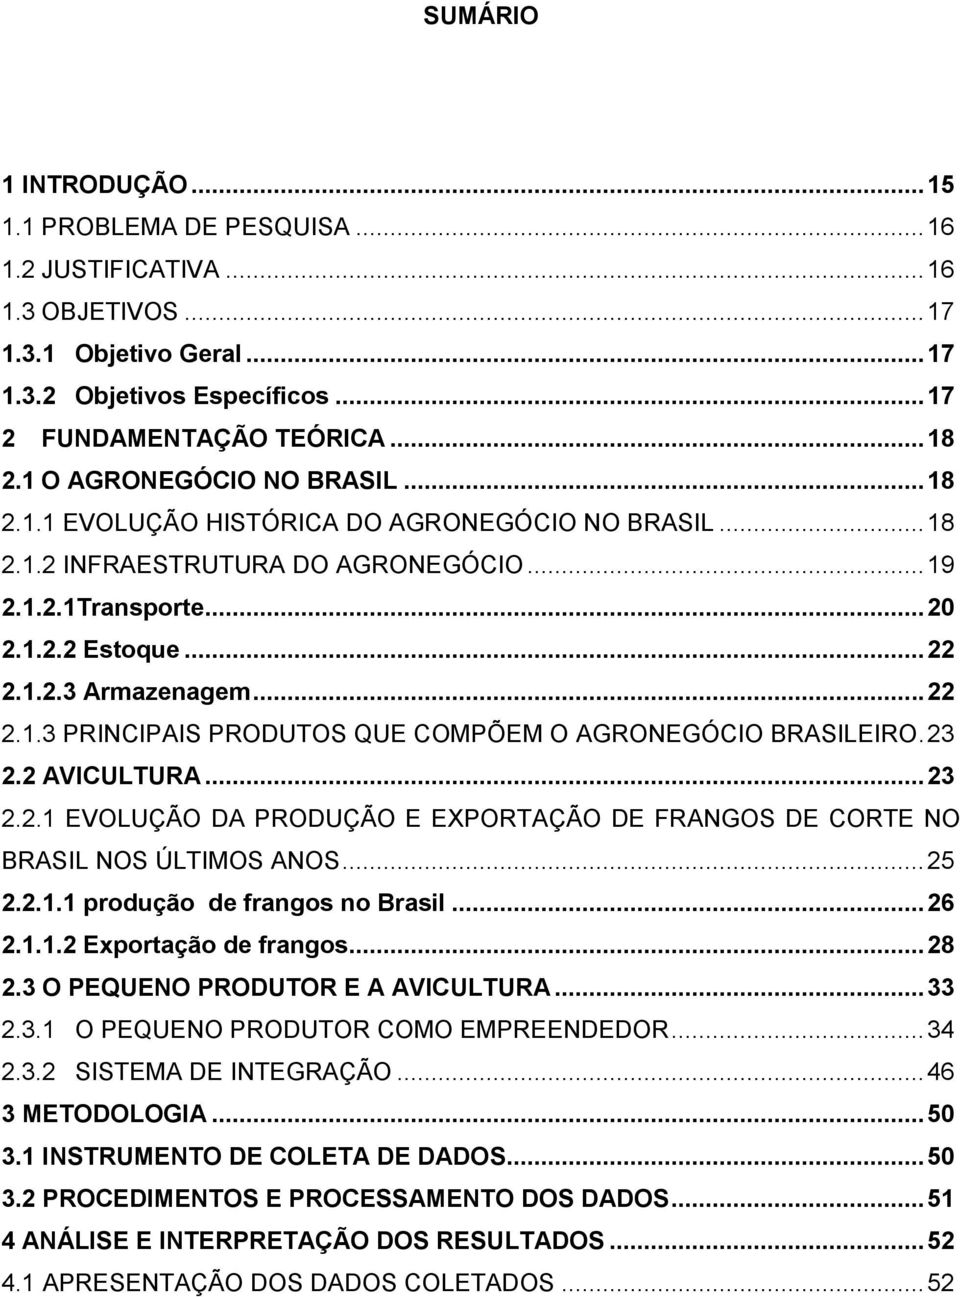 .. 22 2.1.3 PRINCIPAIS PRODUTOS QUE COMPÕEM O AGRONEGÓCIO BRASILEIRO. 23 2.2 AVICULTURA... 23 2.2.1 EVOLUÇÃO DA PRODUÇÃO E EXPORTAÇÃO DE FRANGOS DE CORTE NO BRASIL NOS ÚLTIMOS ANOS... 25 2.2.1.1 produção de frangos no Brasil.